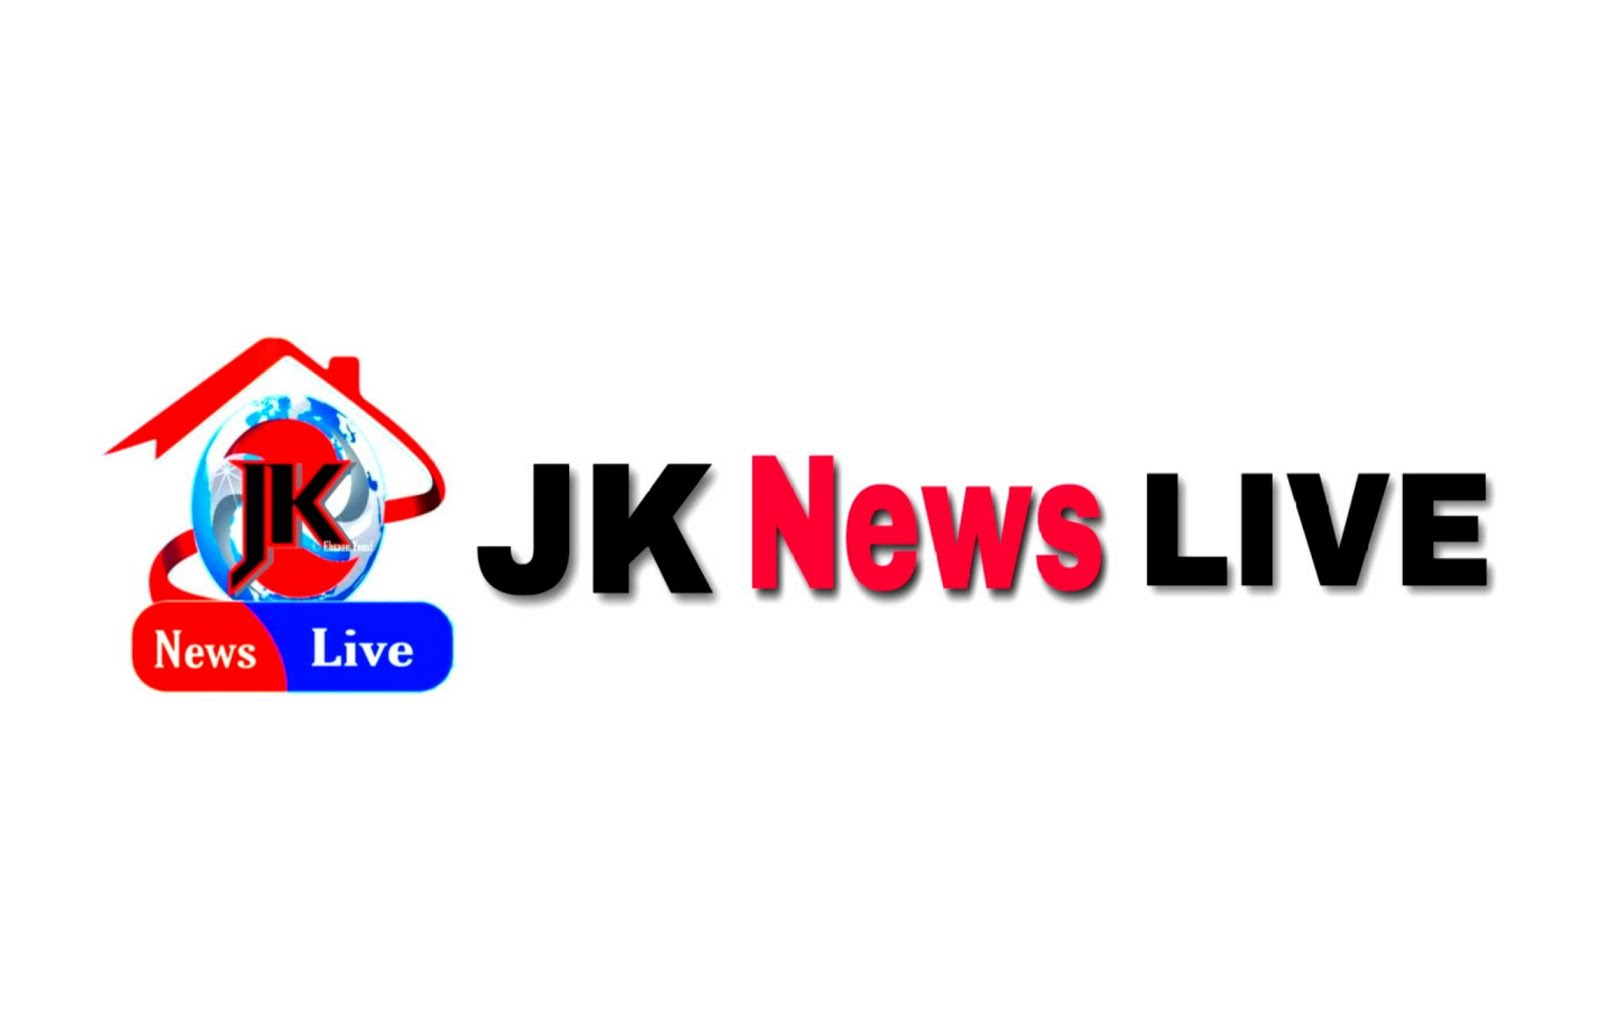 JK News Live